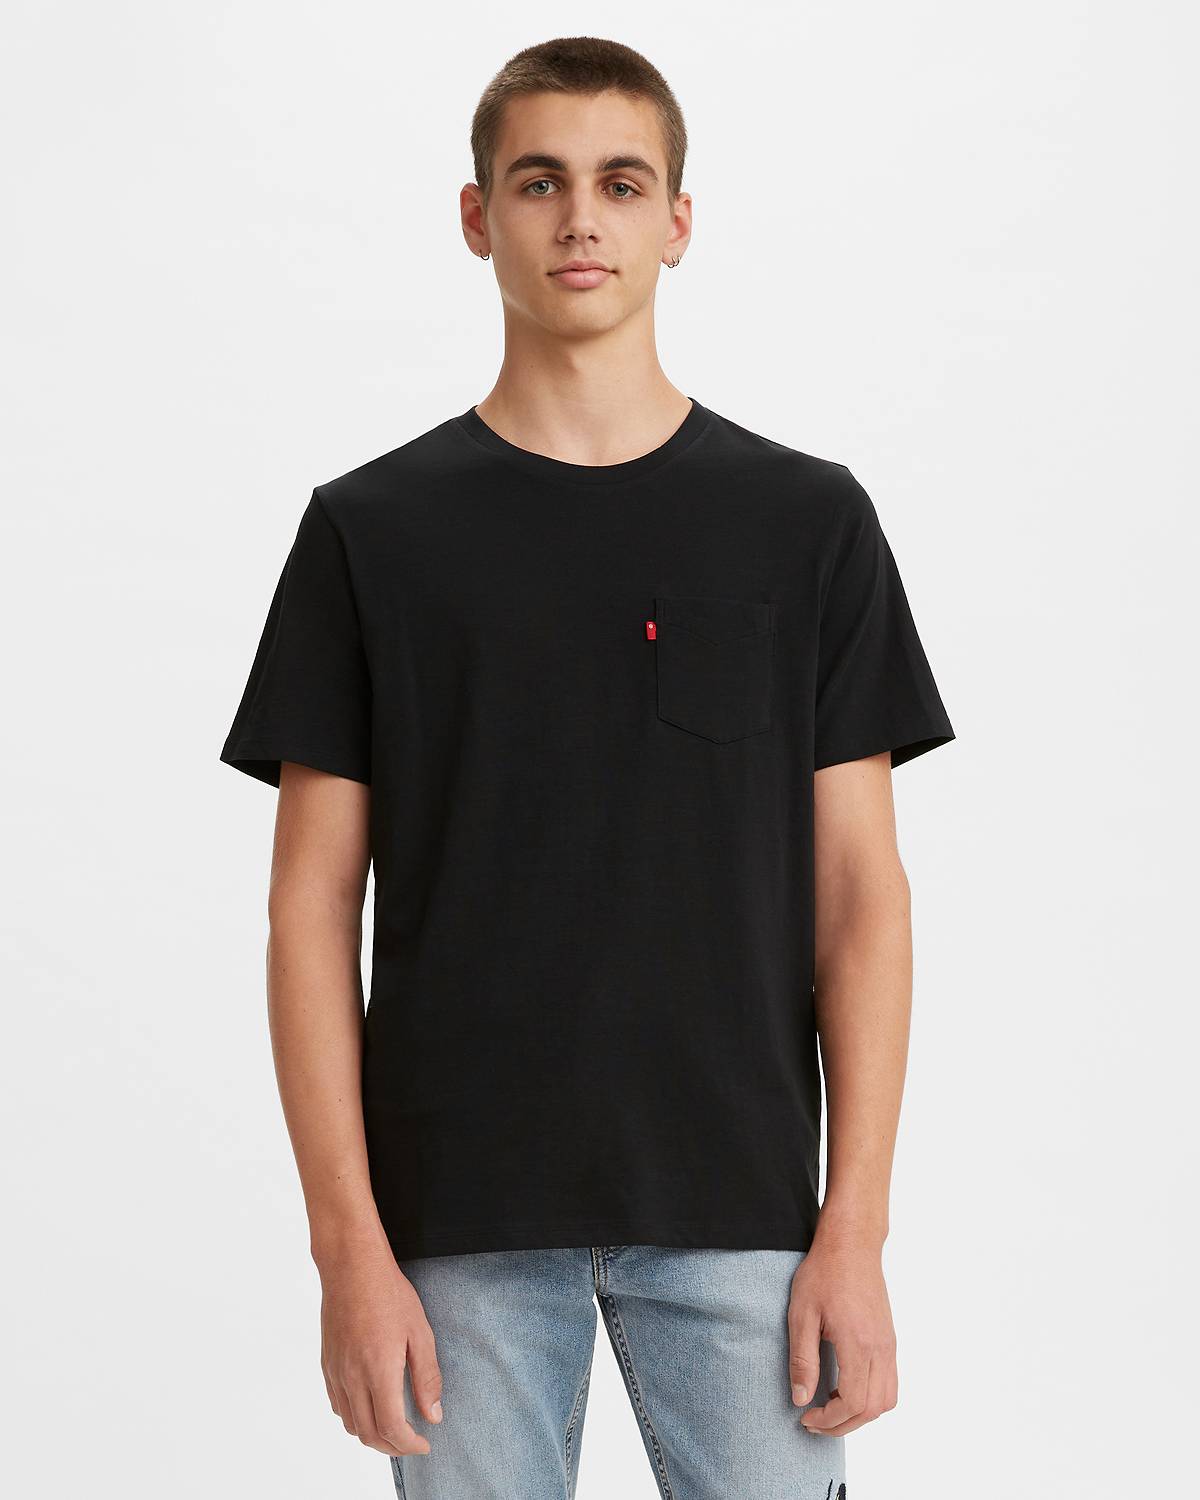 Male model wearing a black T-Shirt.